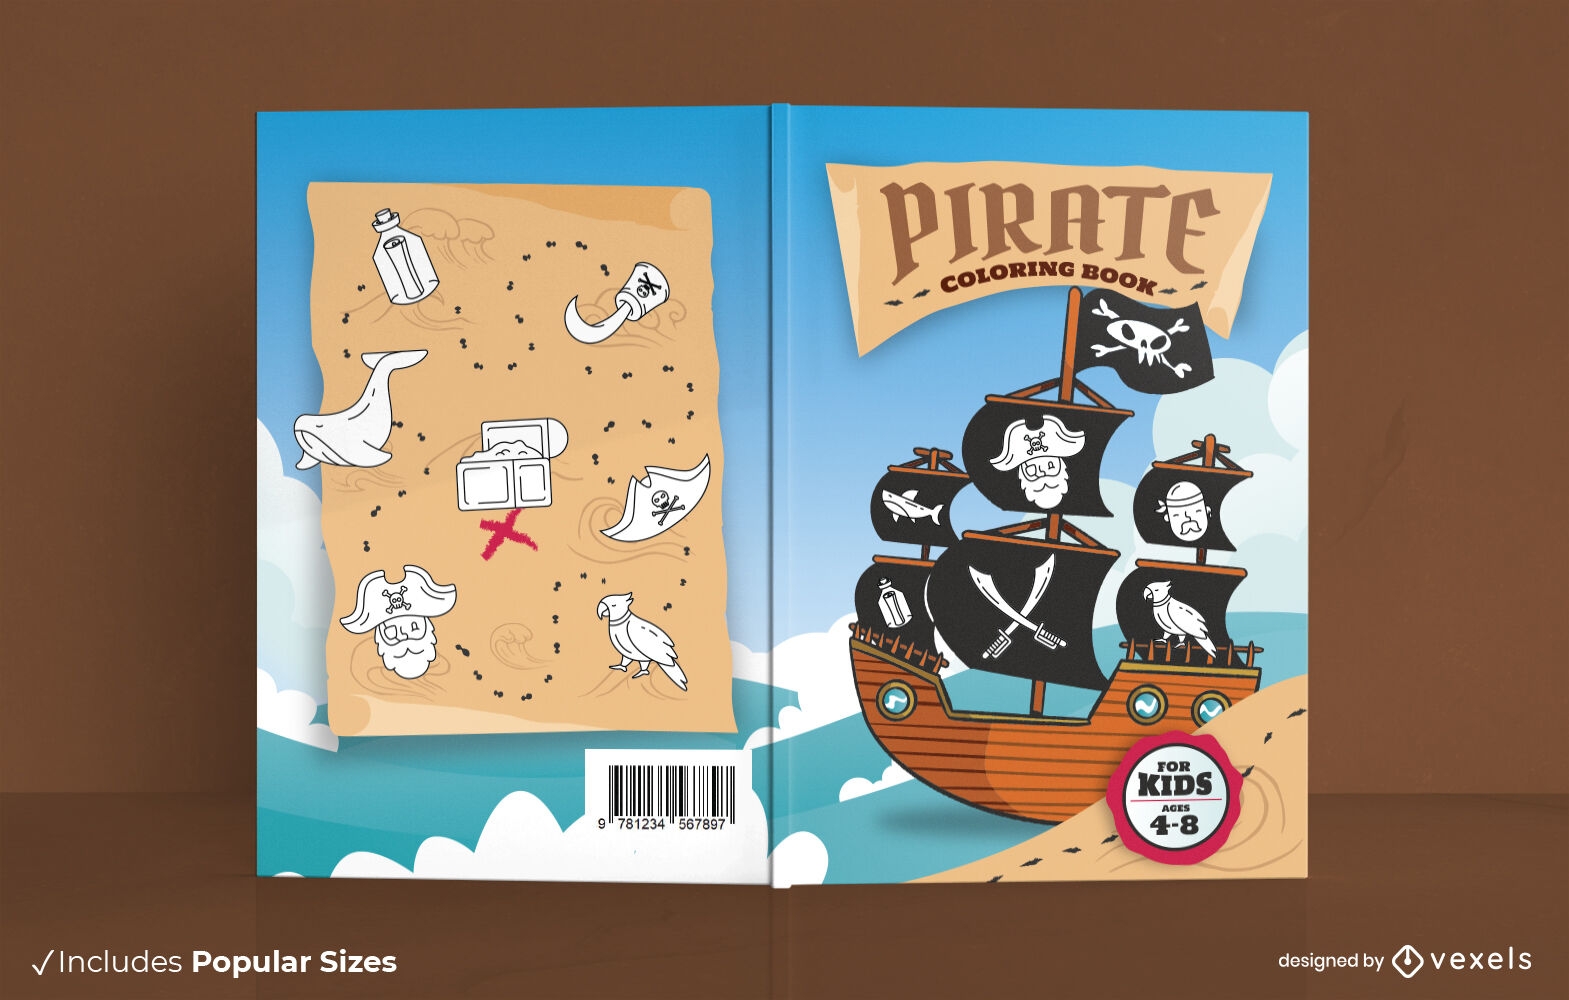 Pirate ship book cover design